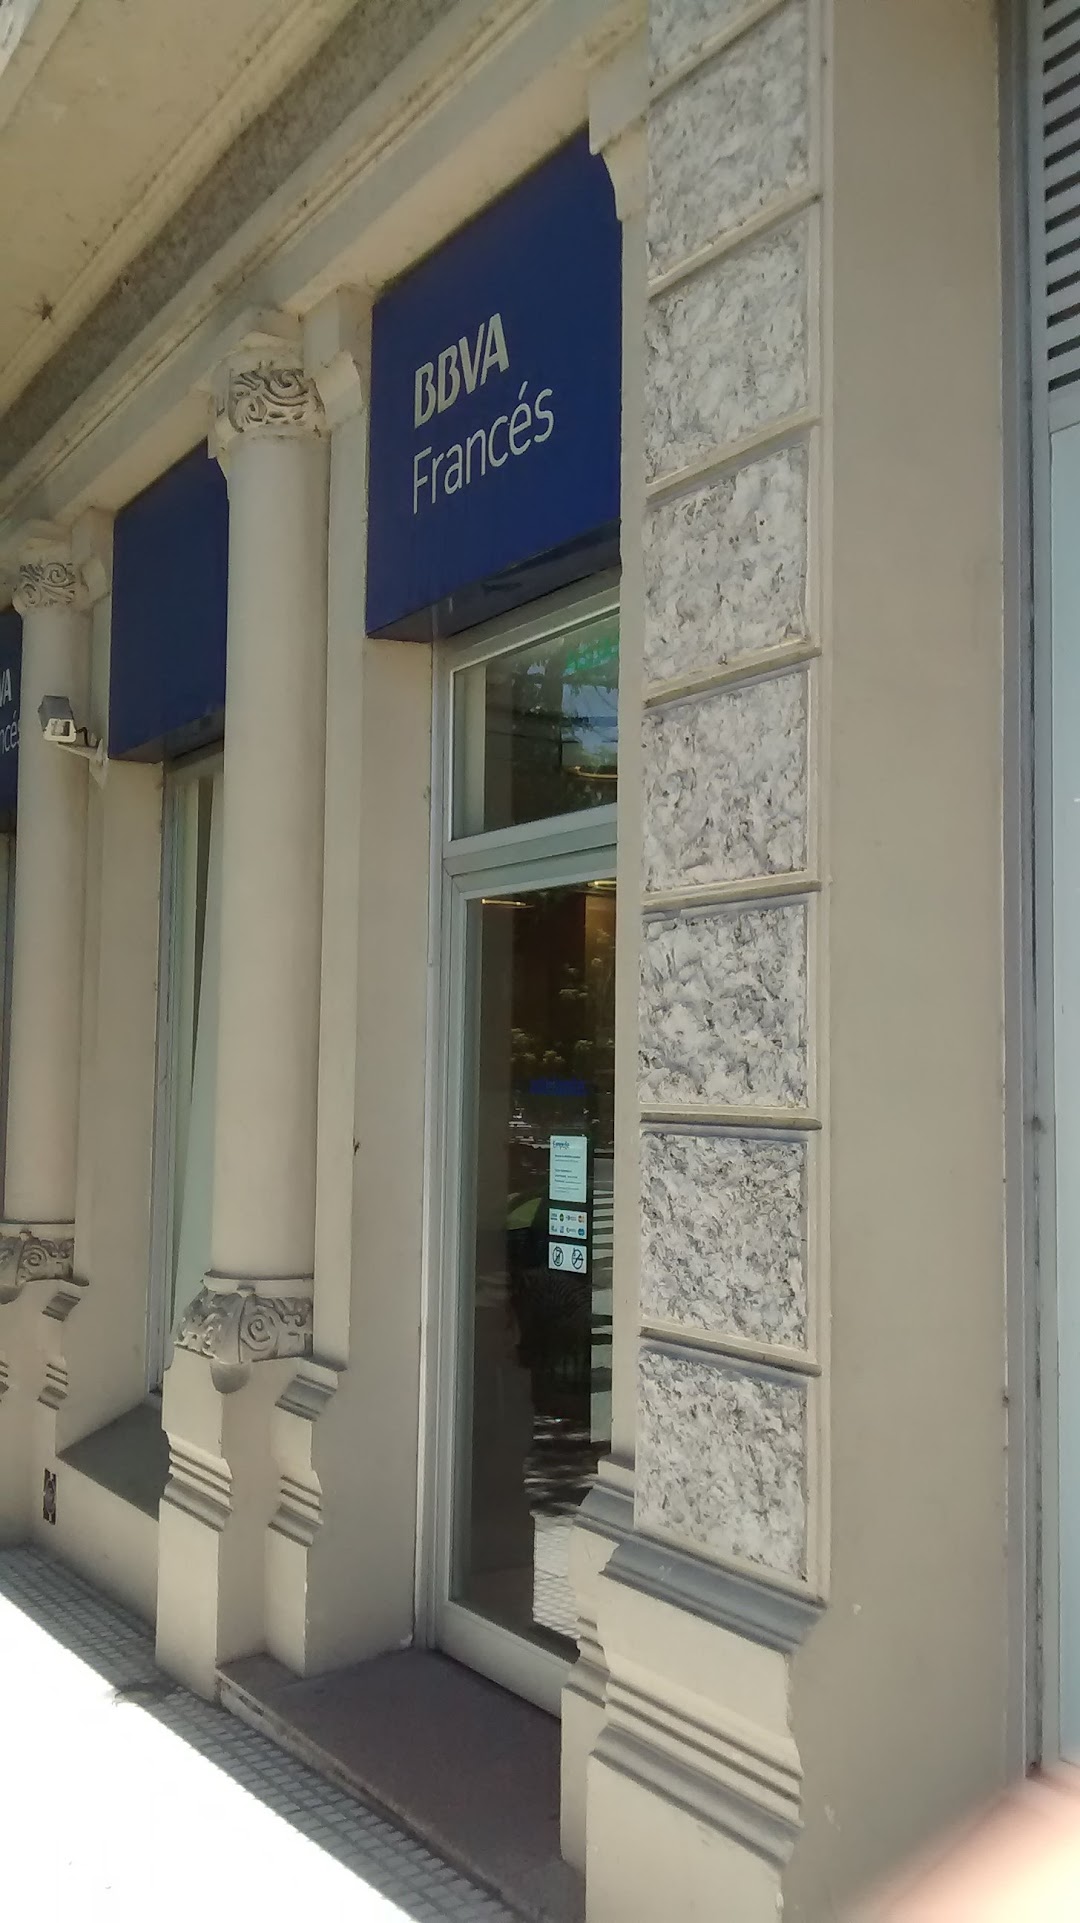 Banco Francés